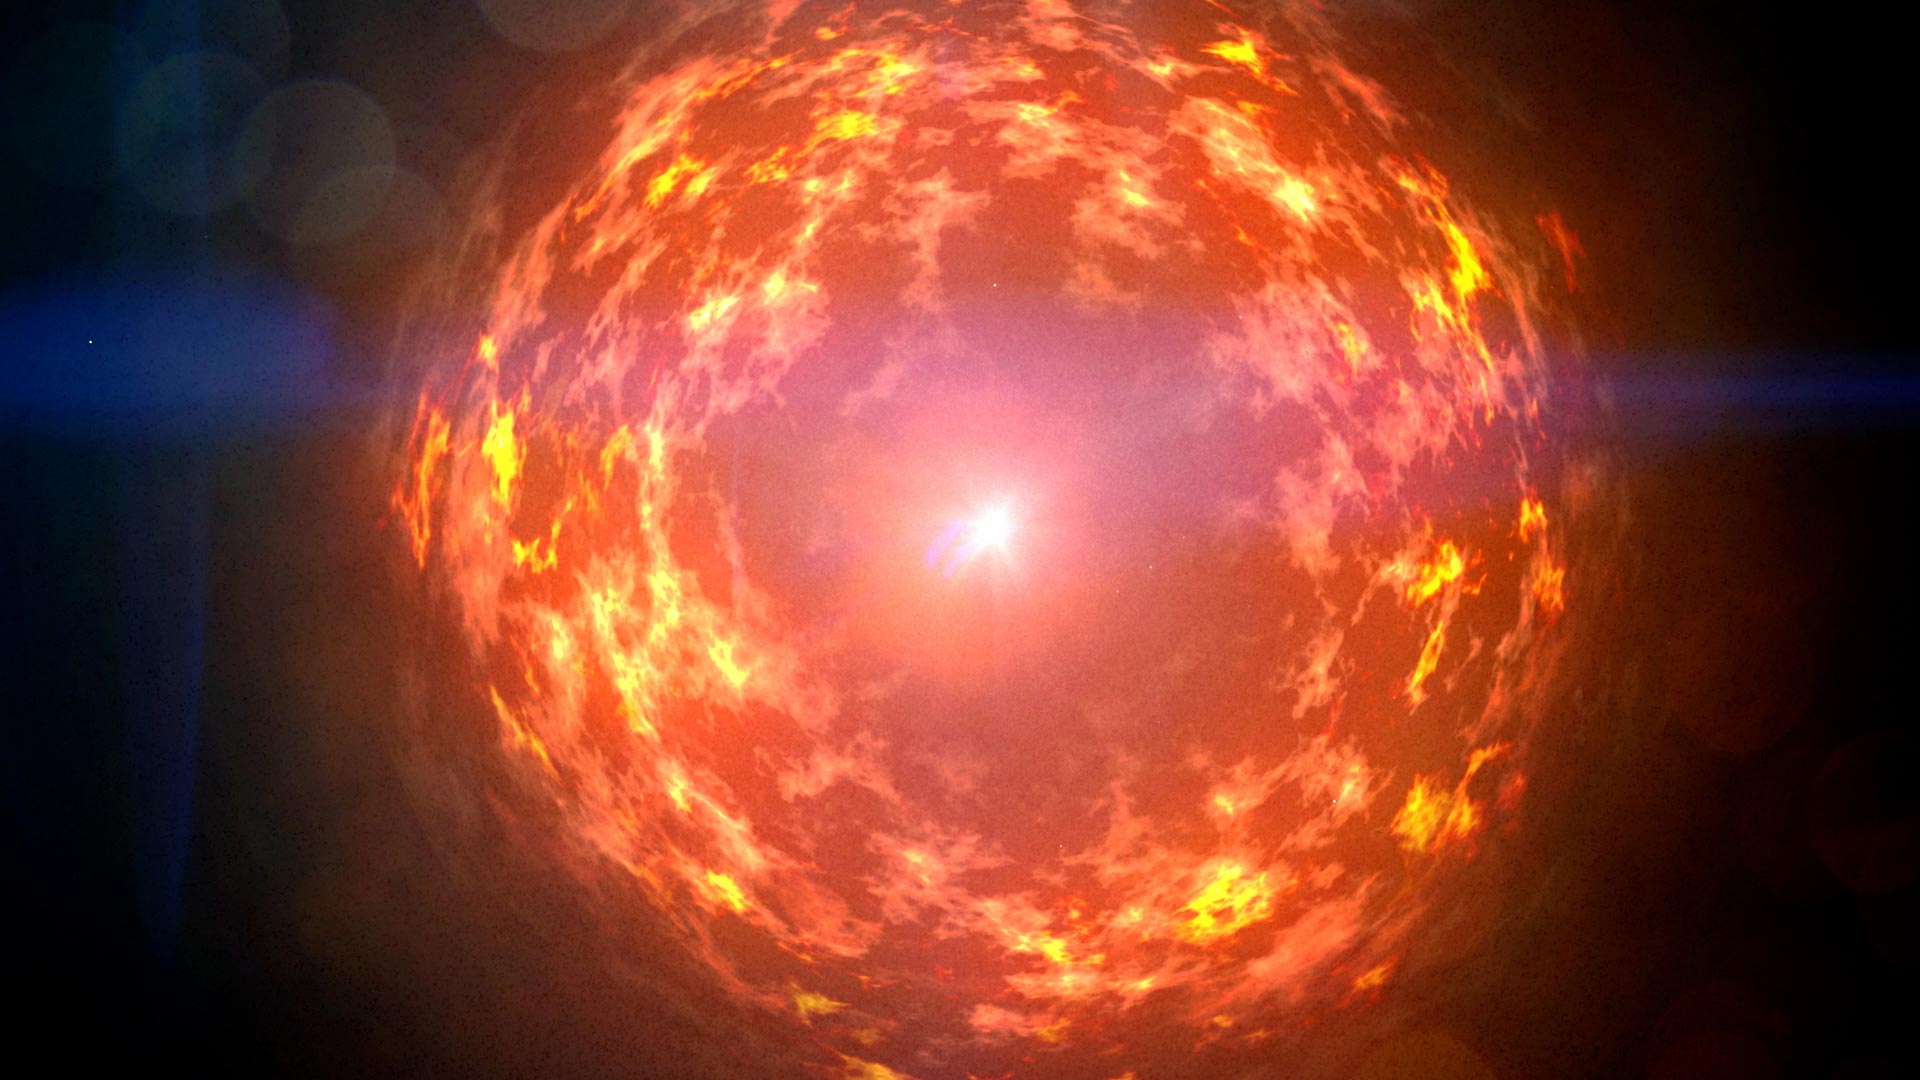 NASA's Fermi does not see any gamma rays from the nearby supernova